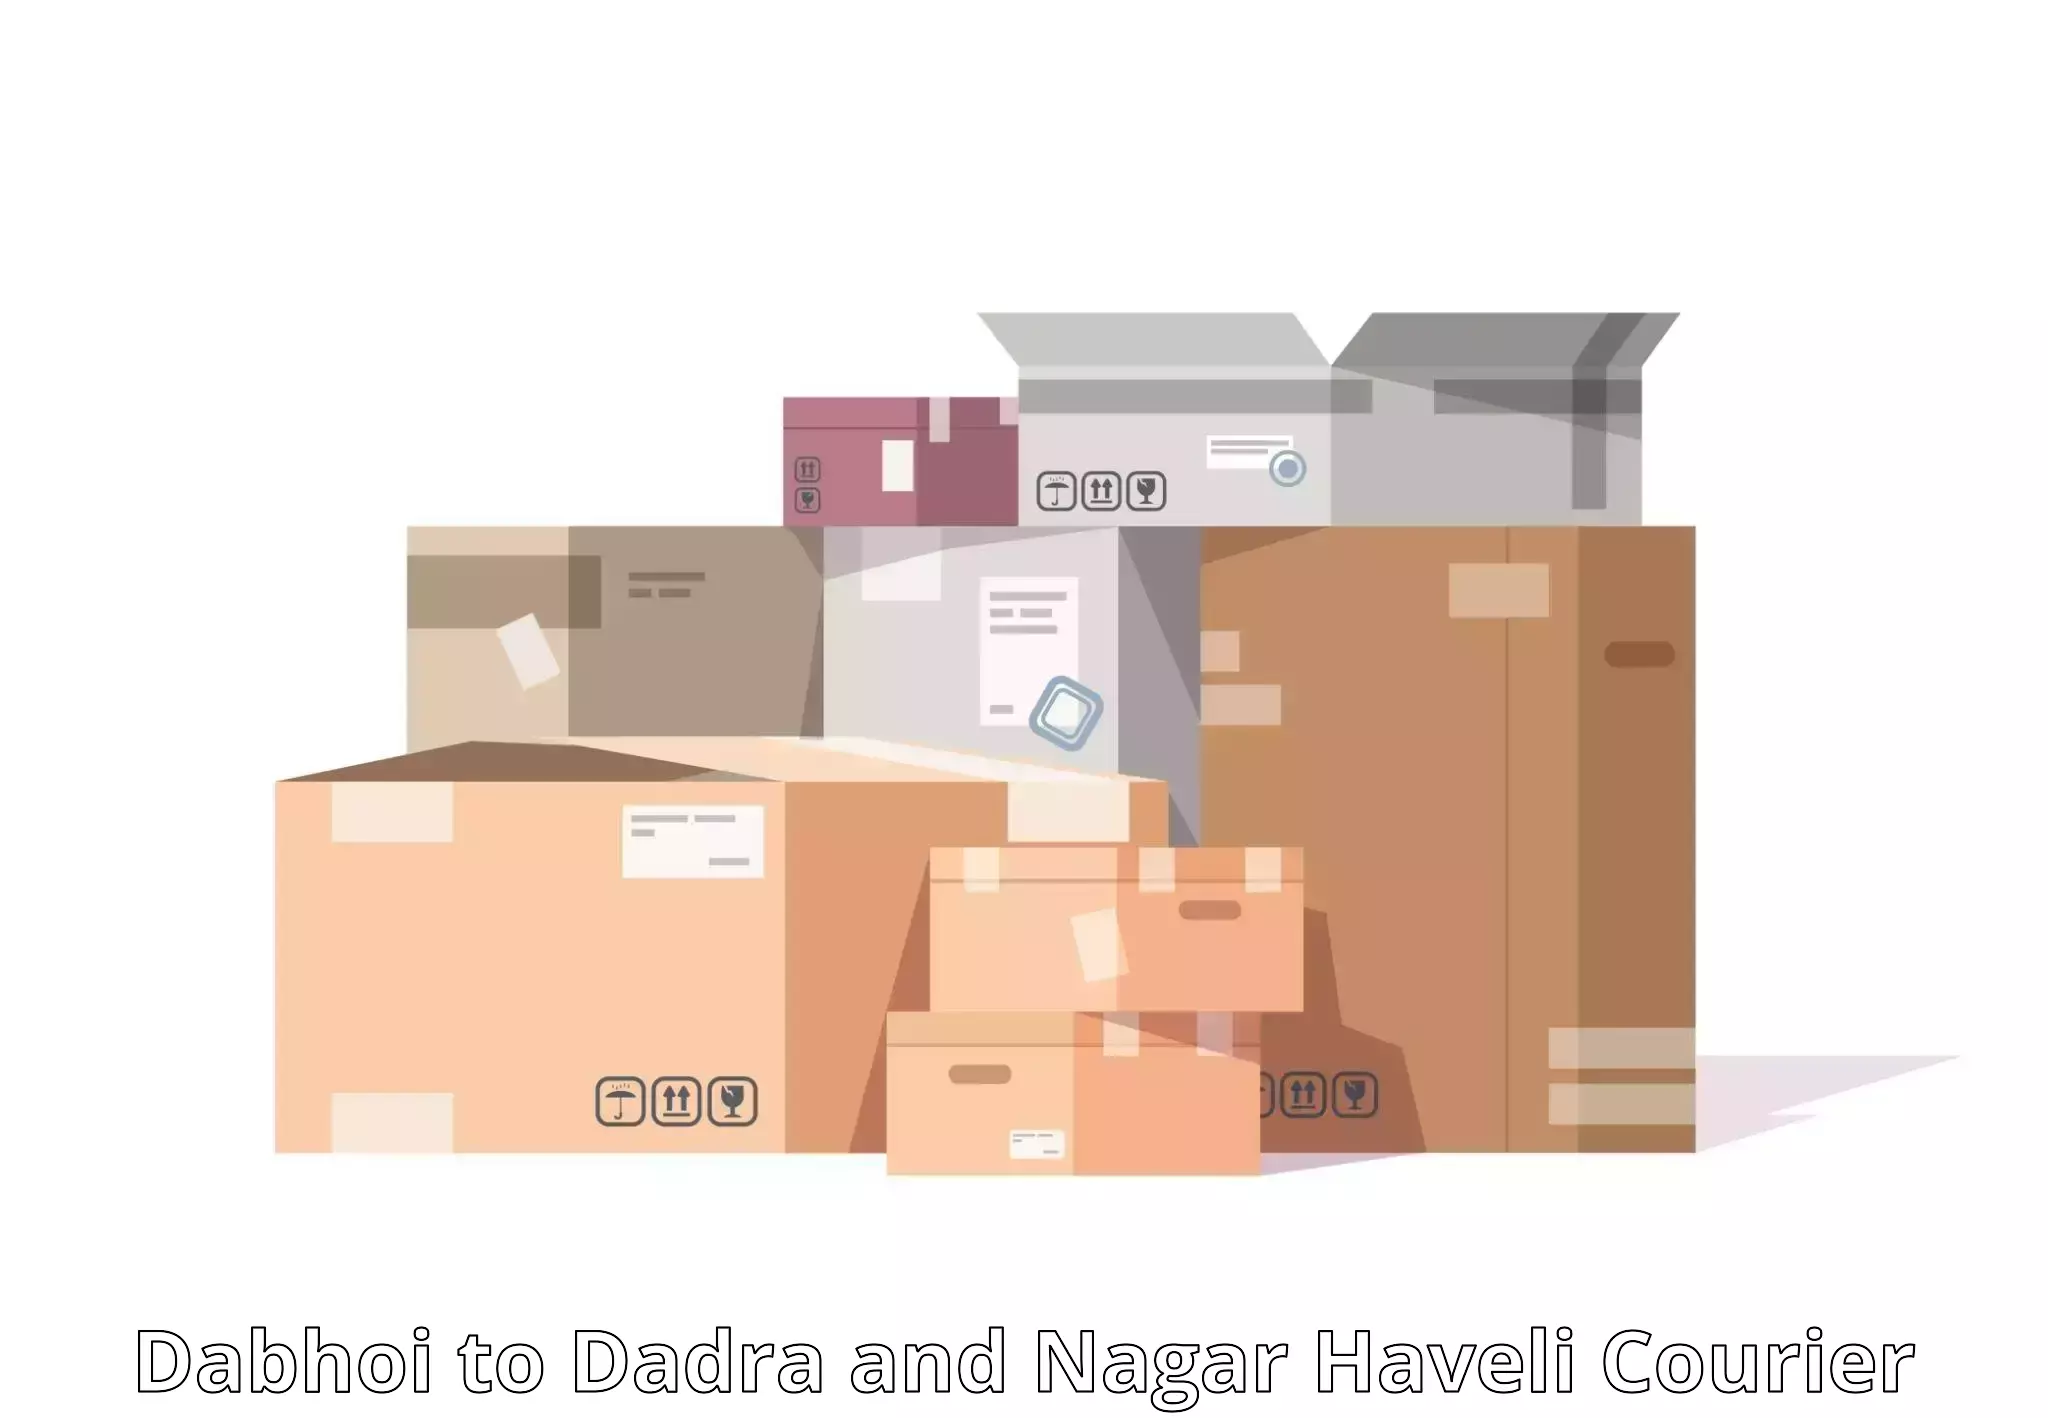 Global shipping networks Dabhoi to Dadra and Nagar Haveli